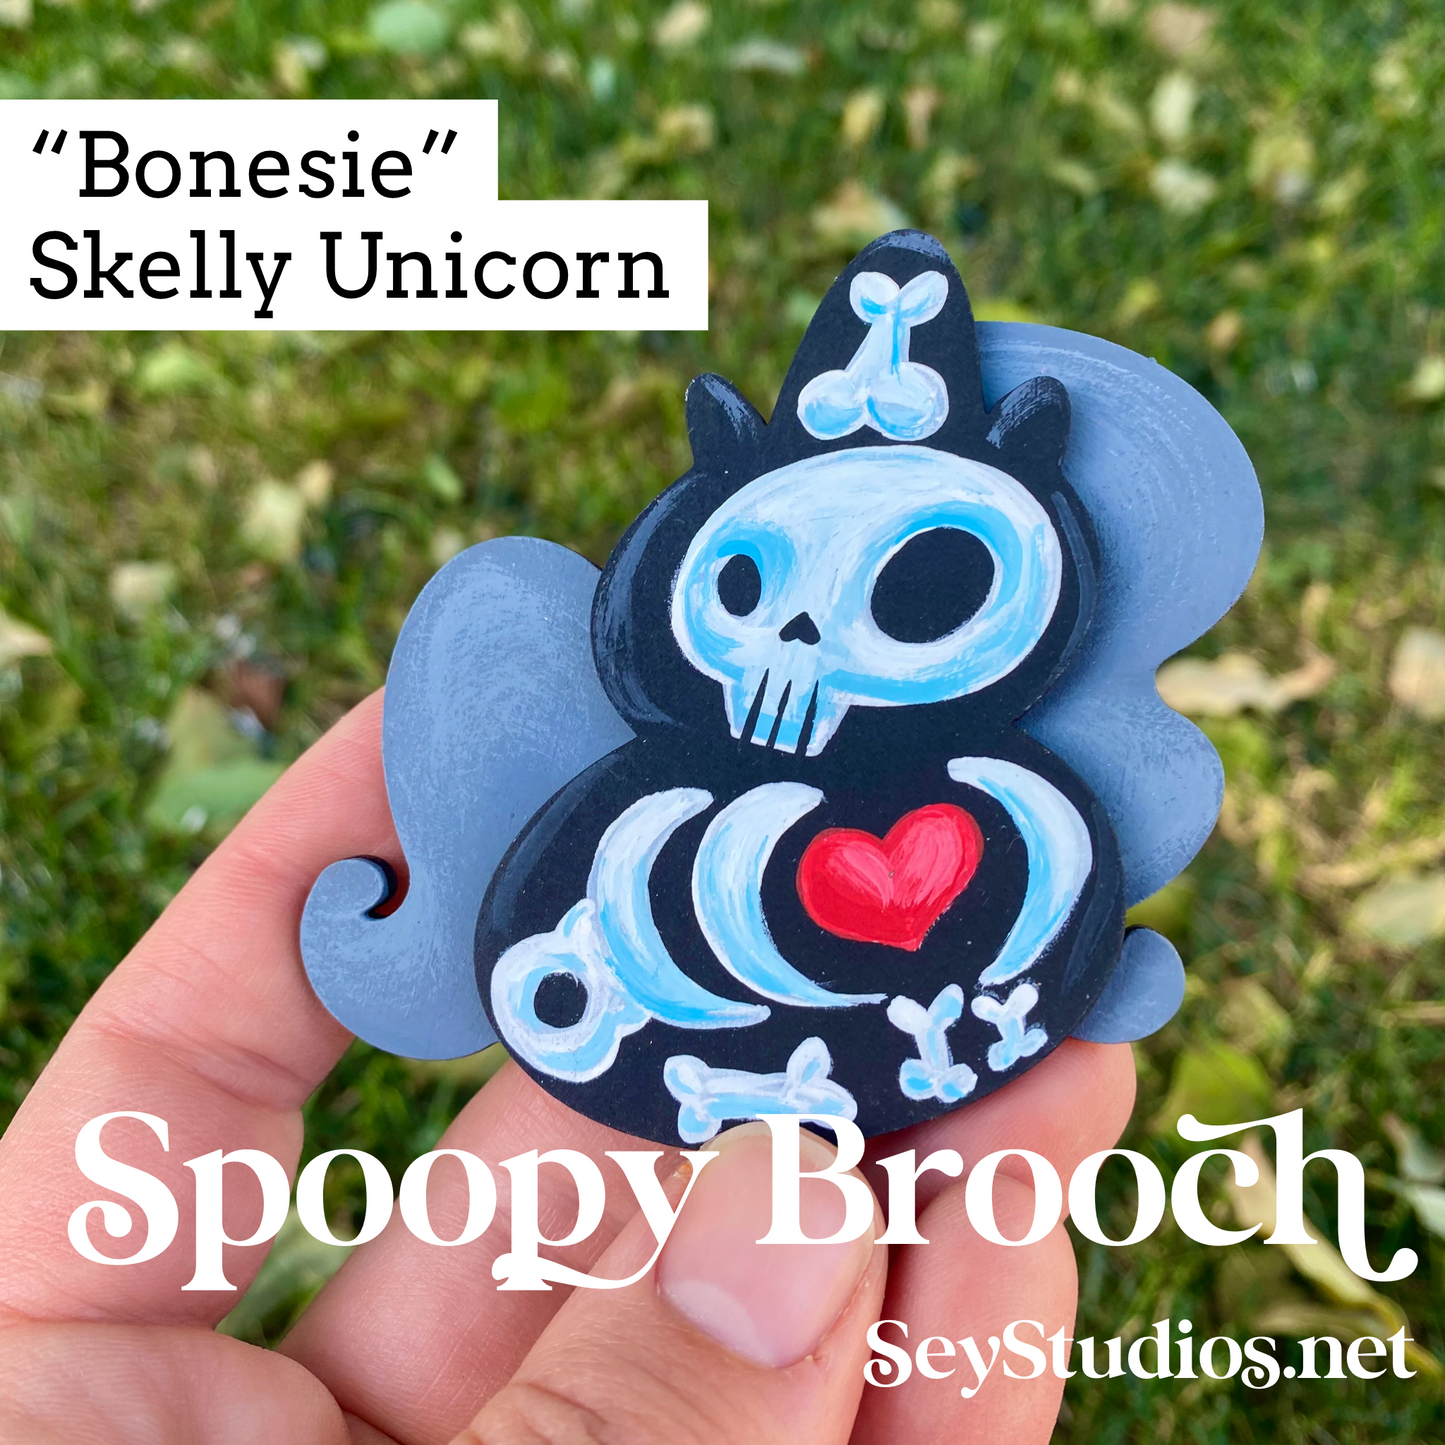 Original - “Bonesie, Skelly Unicorn” Spoopy Brooch